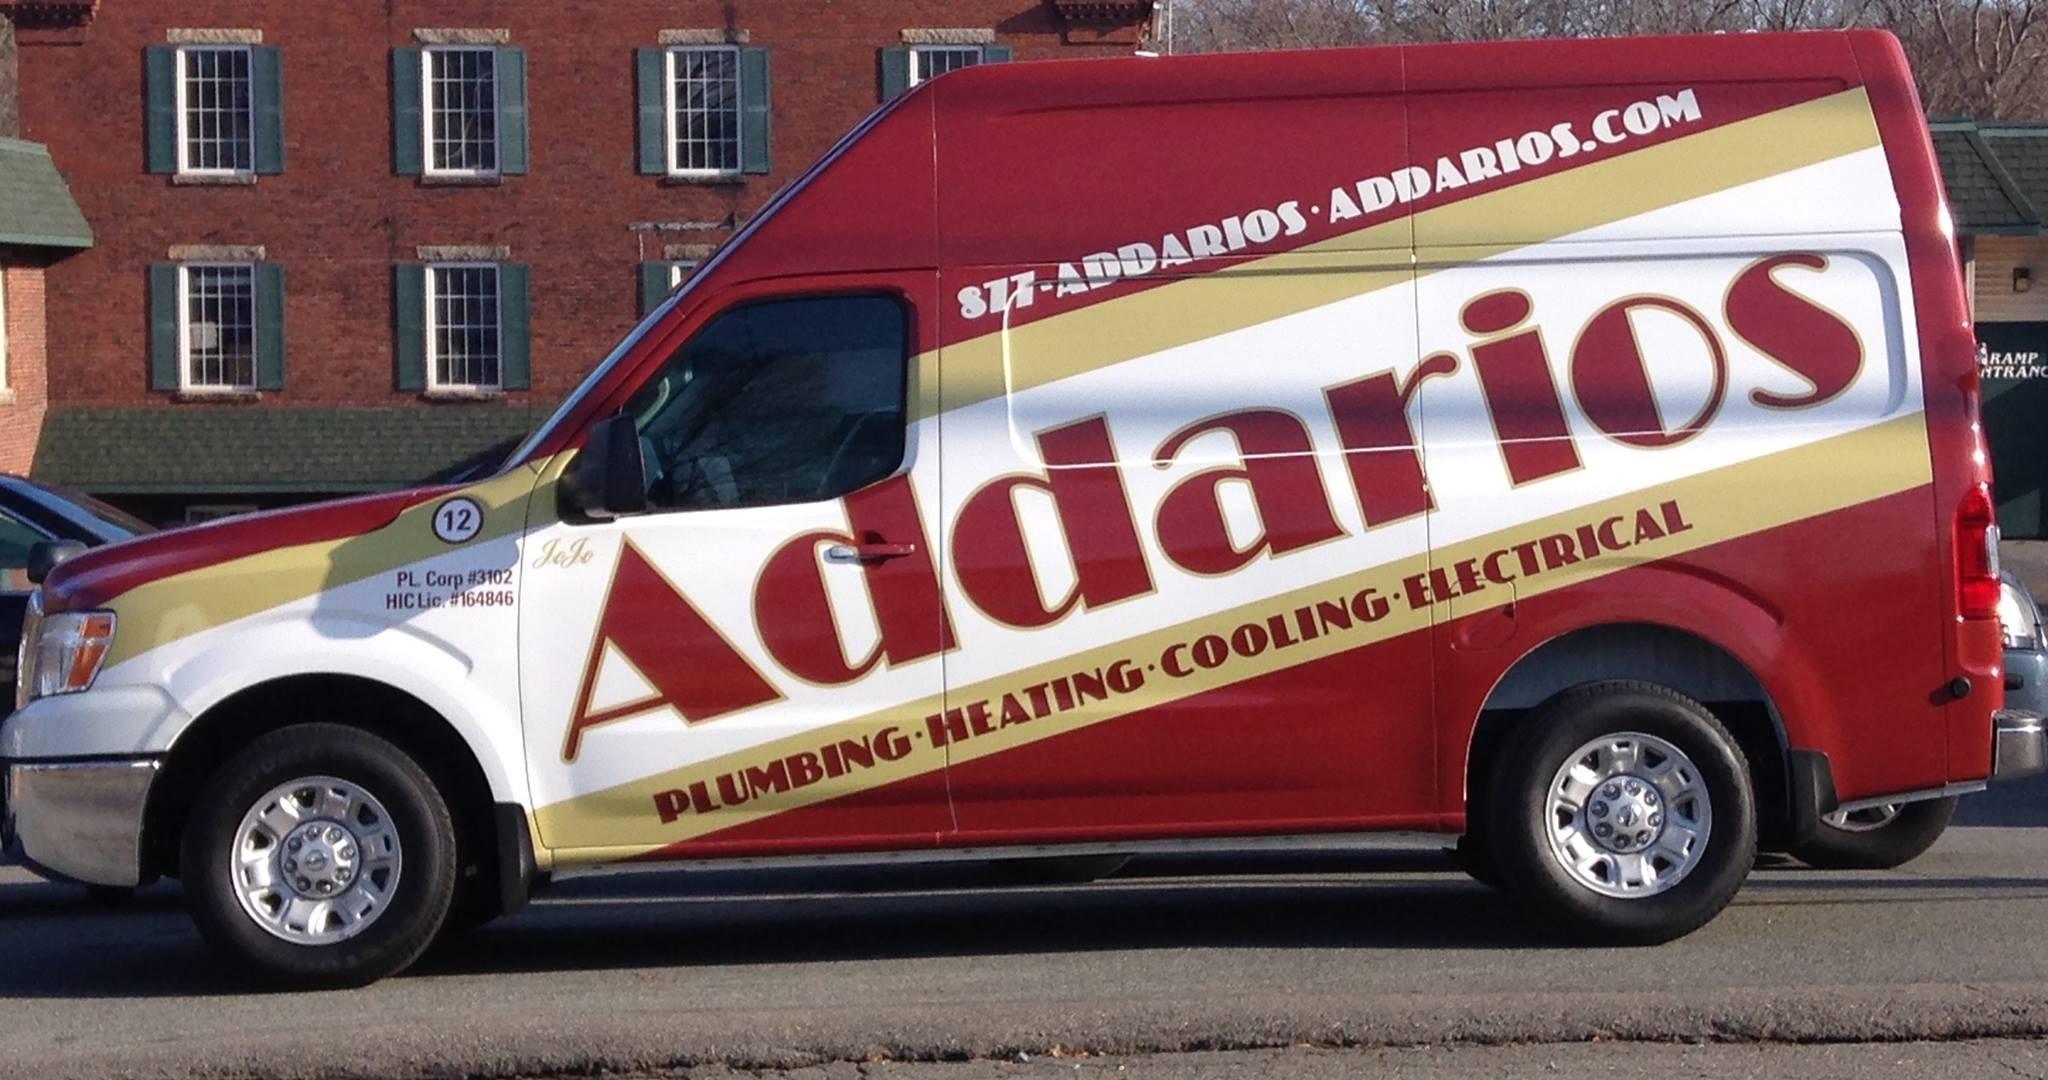 Addario's Services Photo